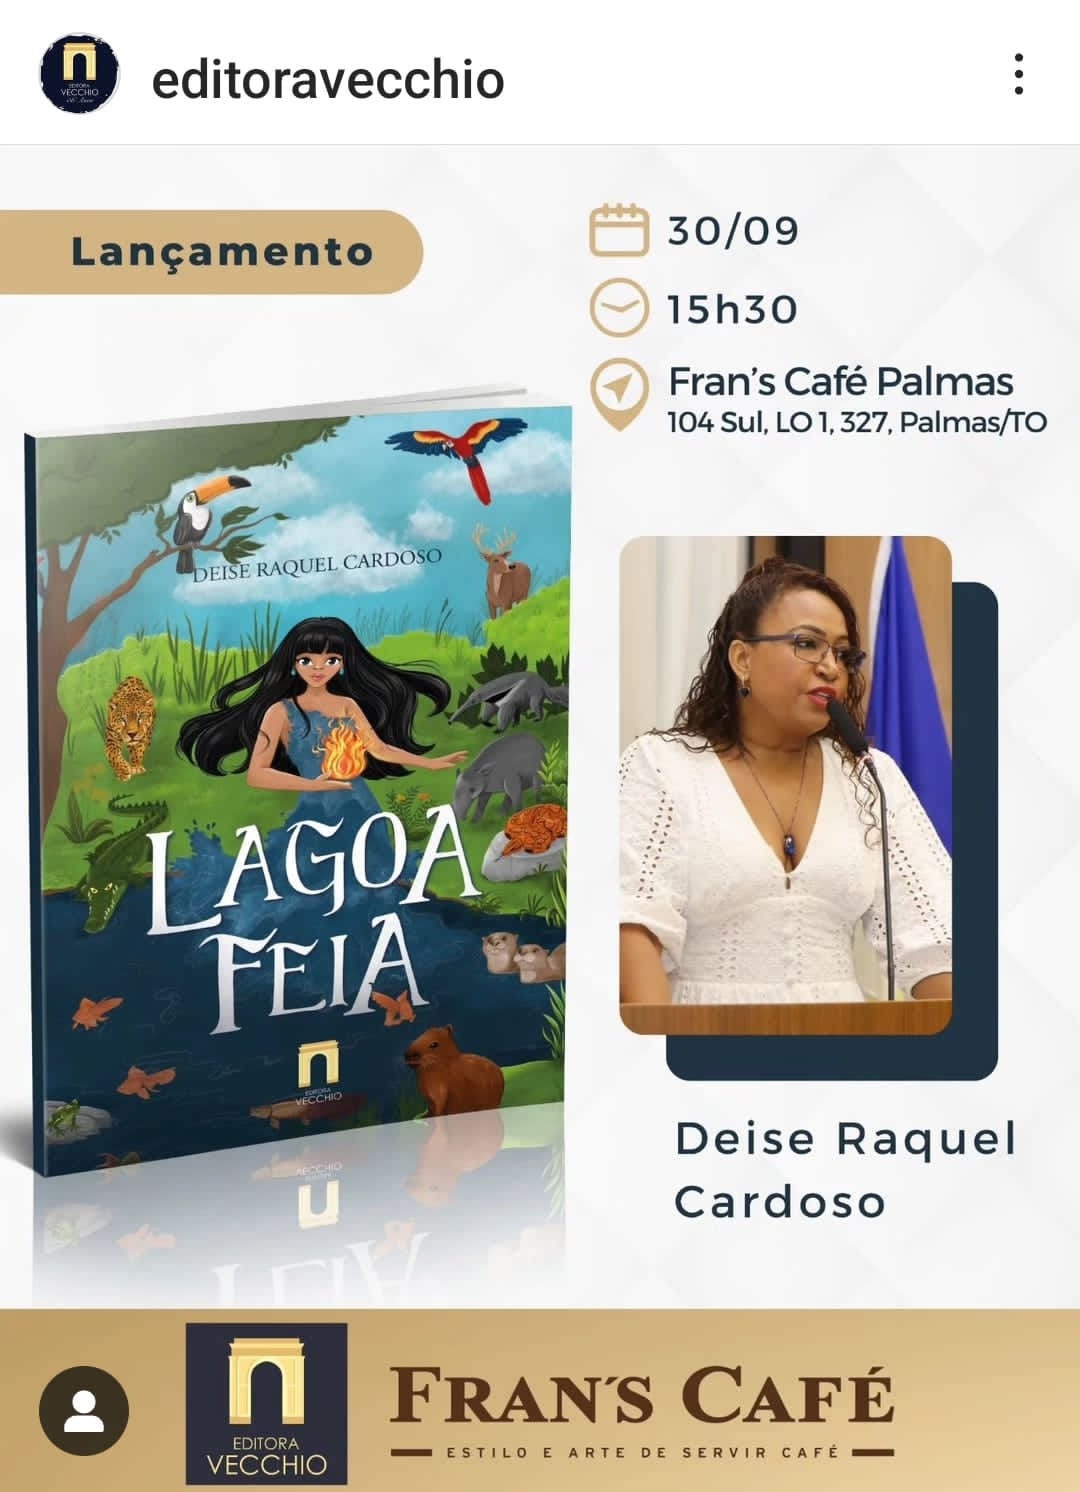 Professora e escritora, Deise Raquel Cardoso lança novo livro 'Lagoa Feia' no próximo dia 30 em Palmas